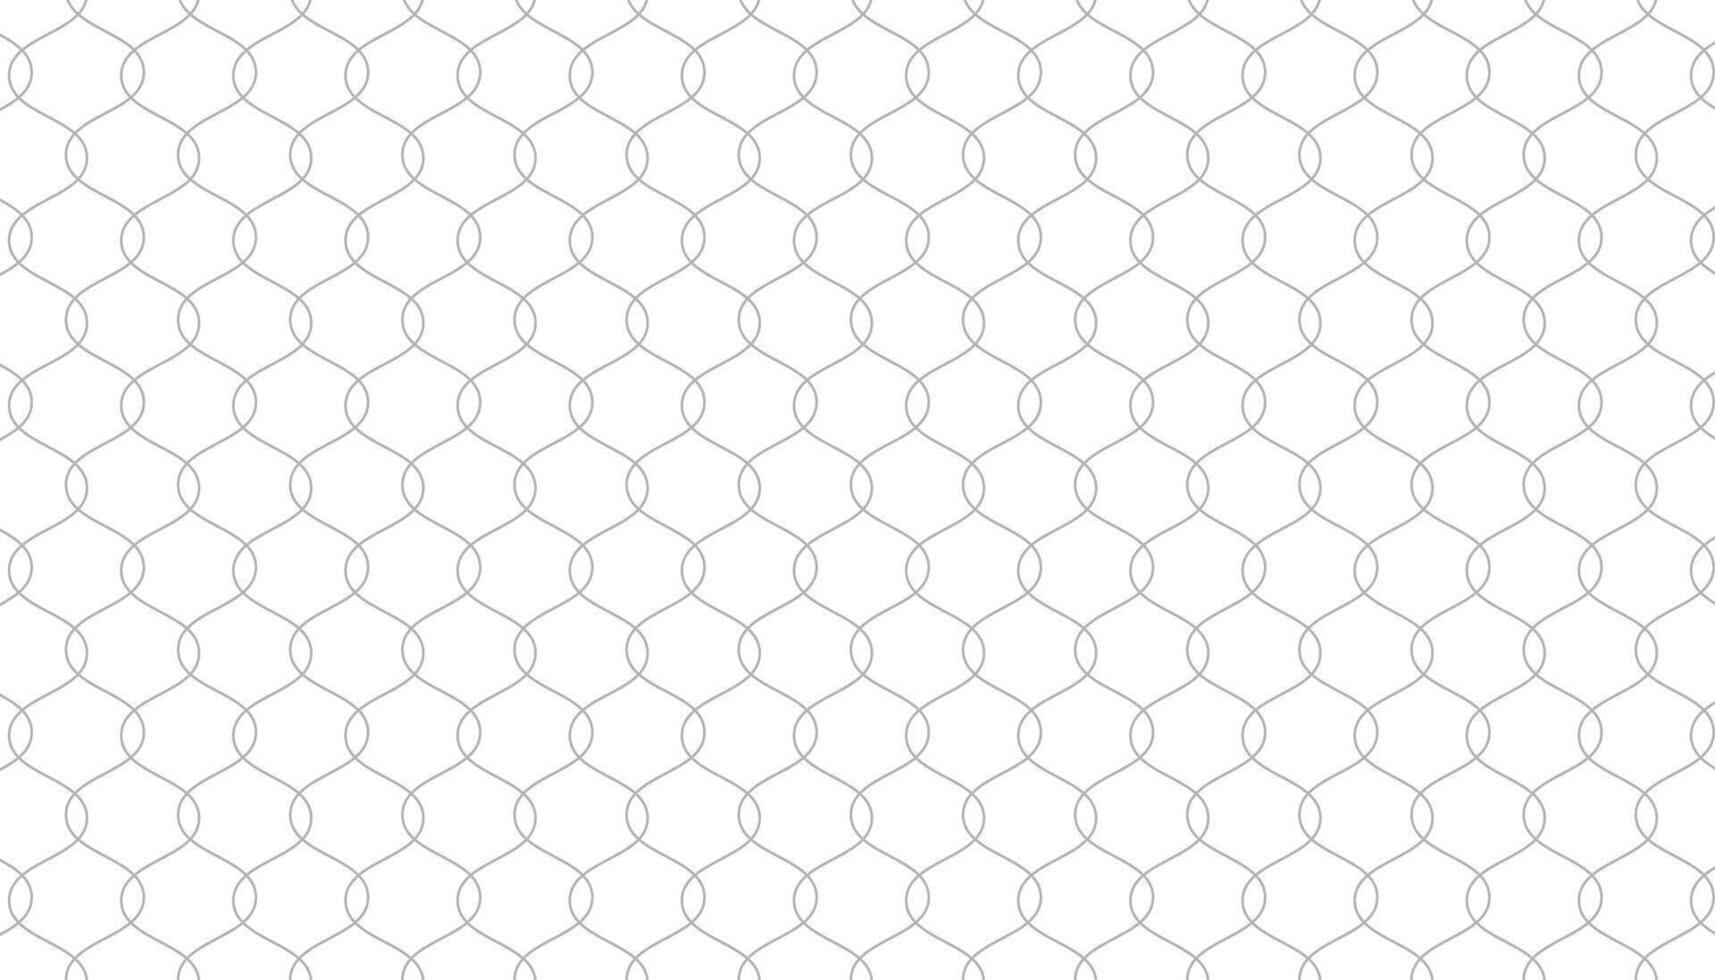 abstrakt geometrisk staket mönster baner i minimalistisk stil vektor